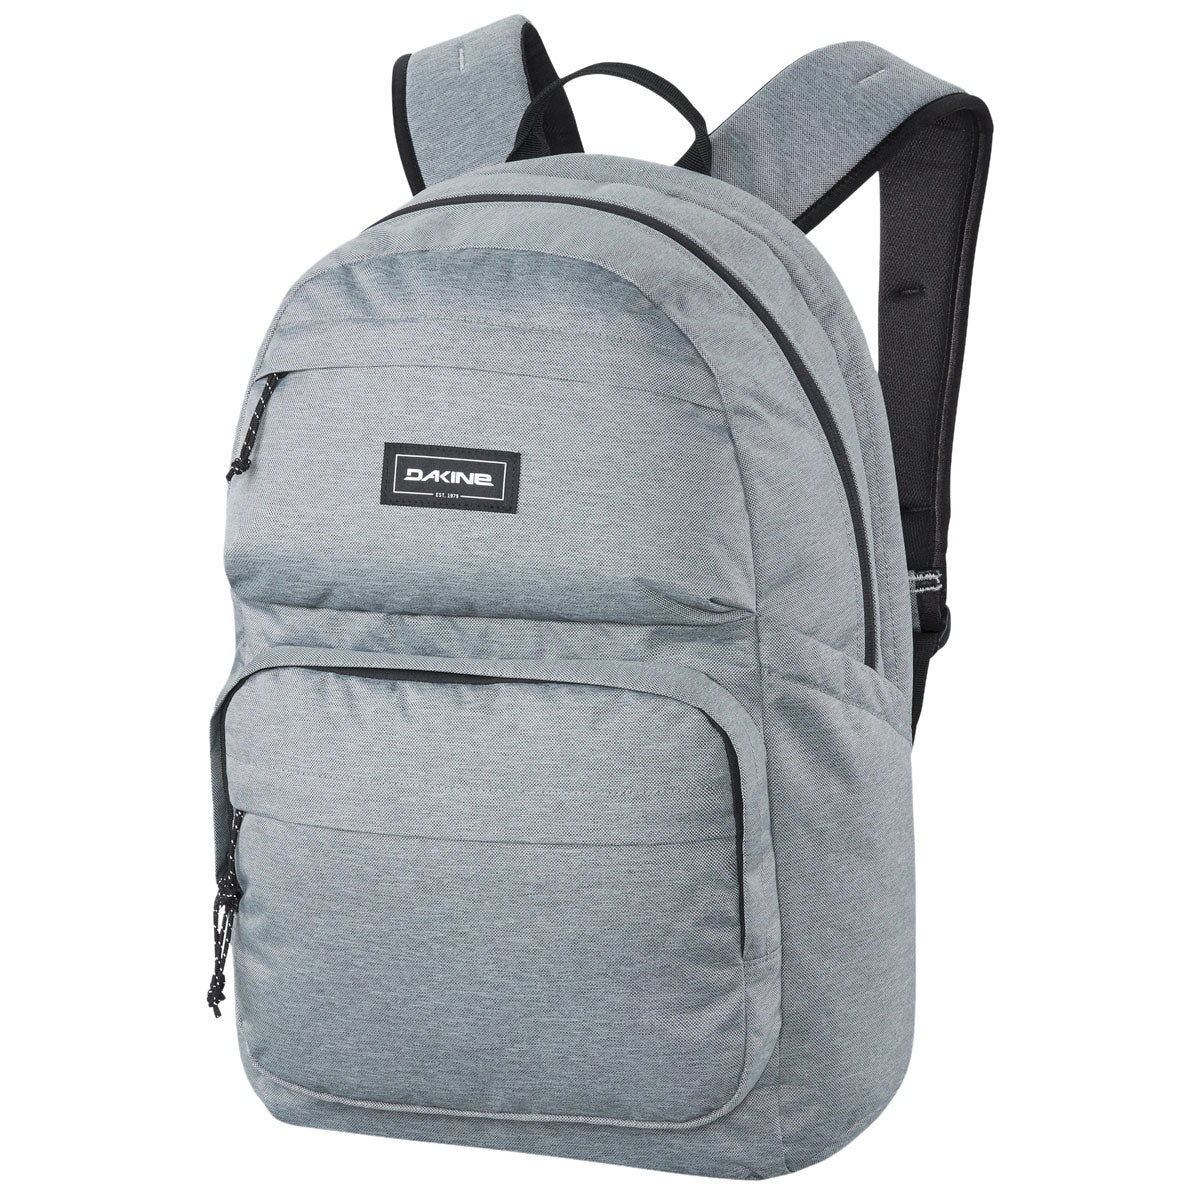 Dakine Method 32L Backpack - Geyser Grey image 1